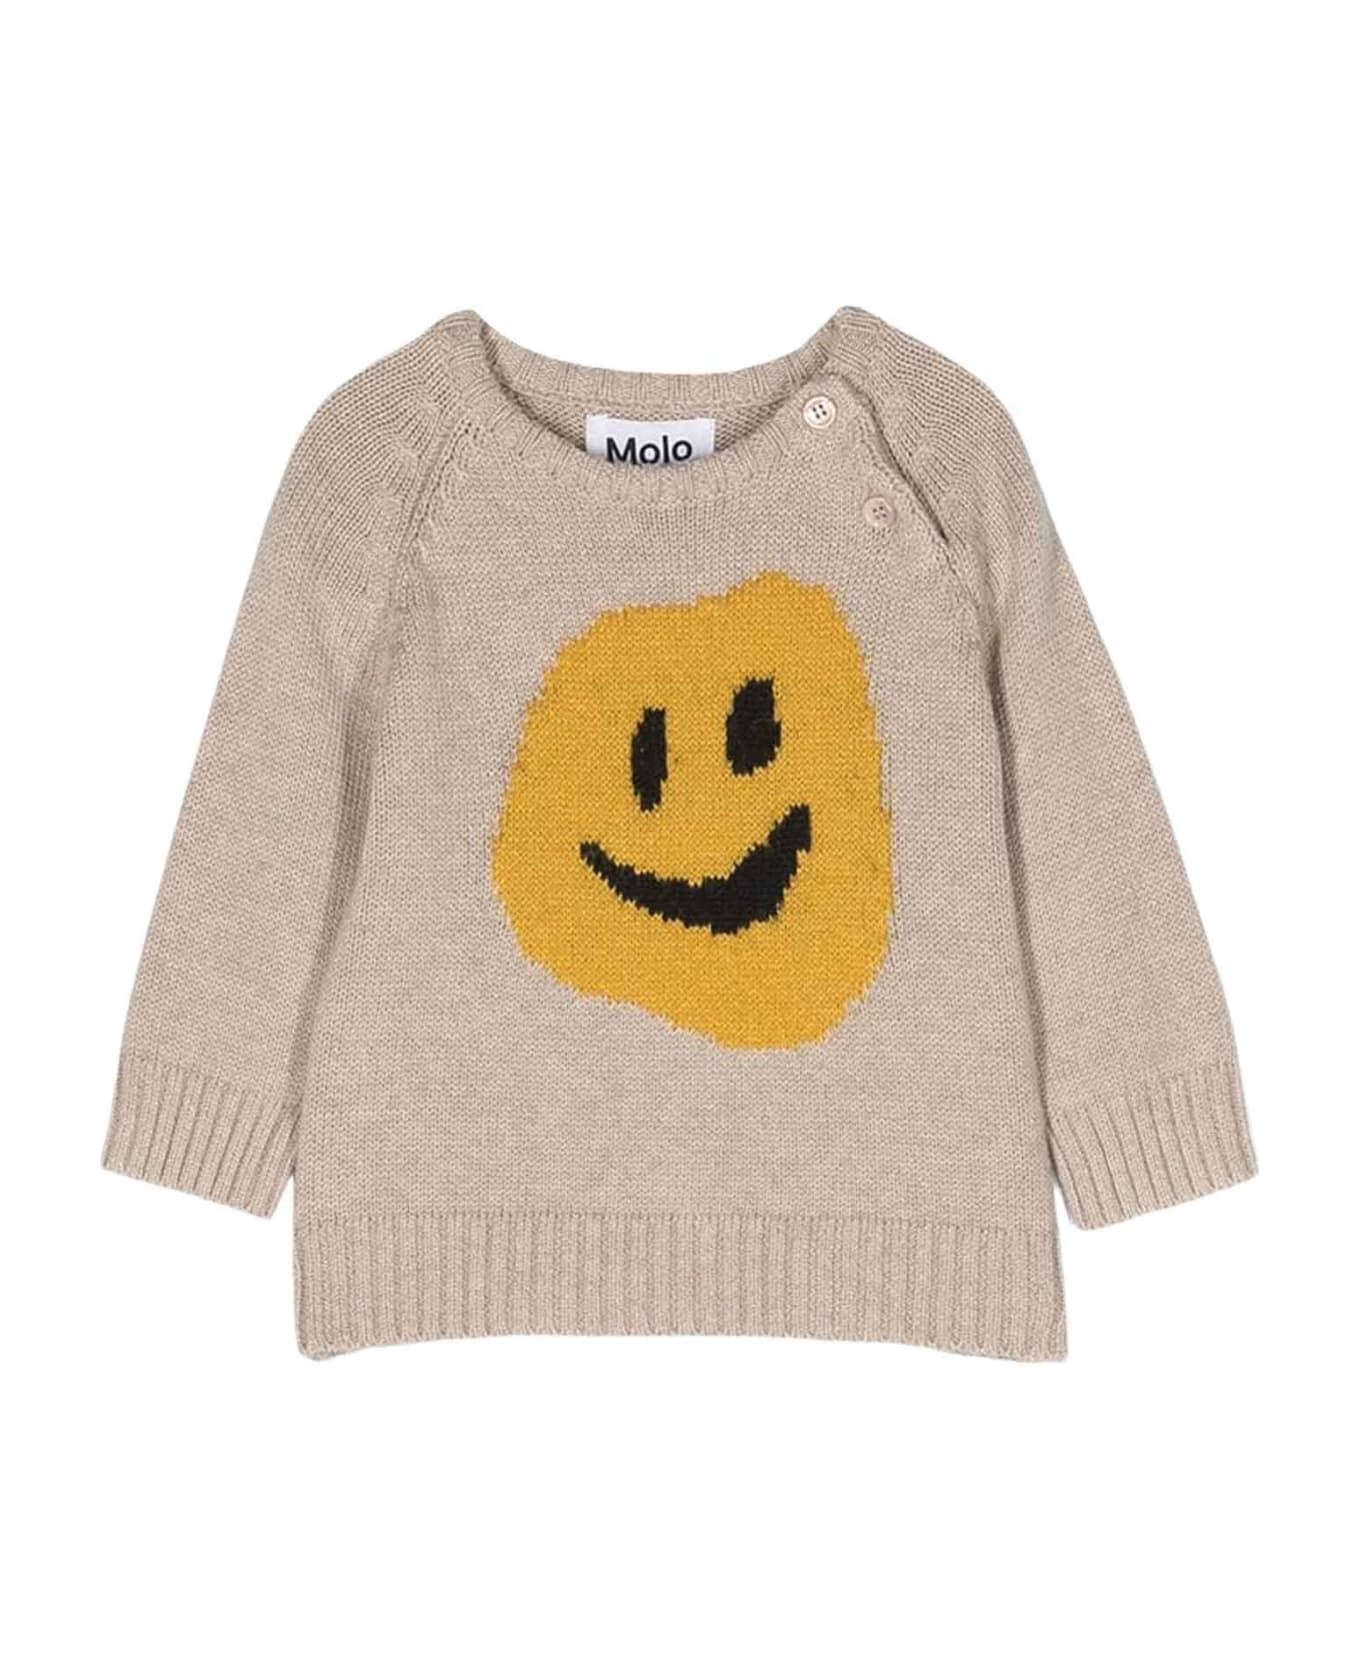 Molo Beige Sweater Unisex Kids - Beige